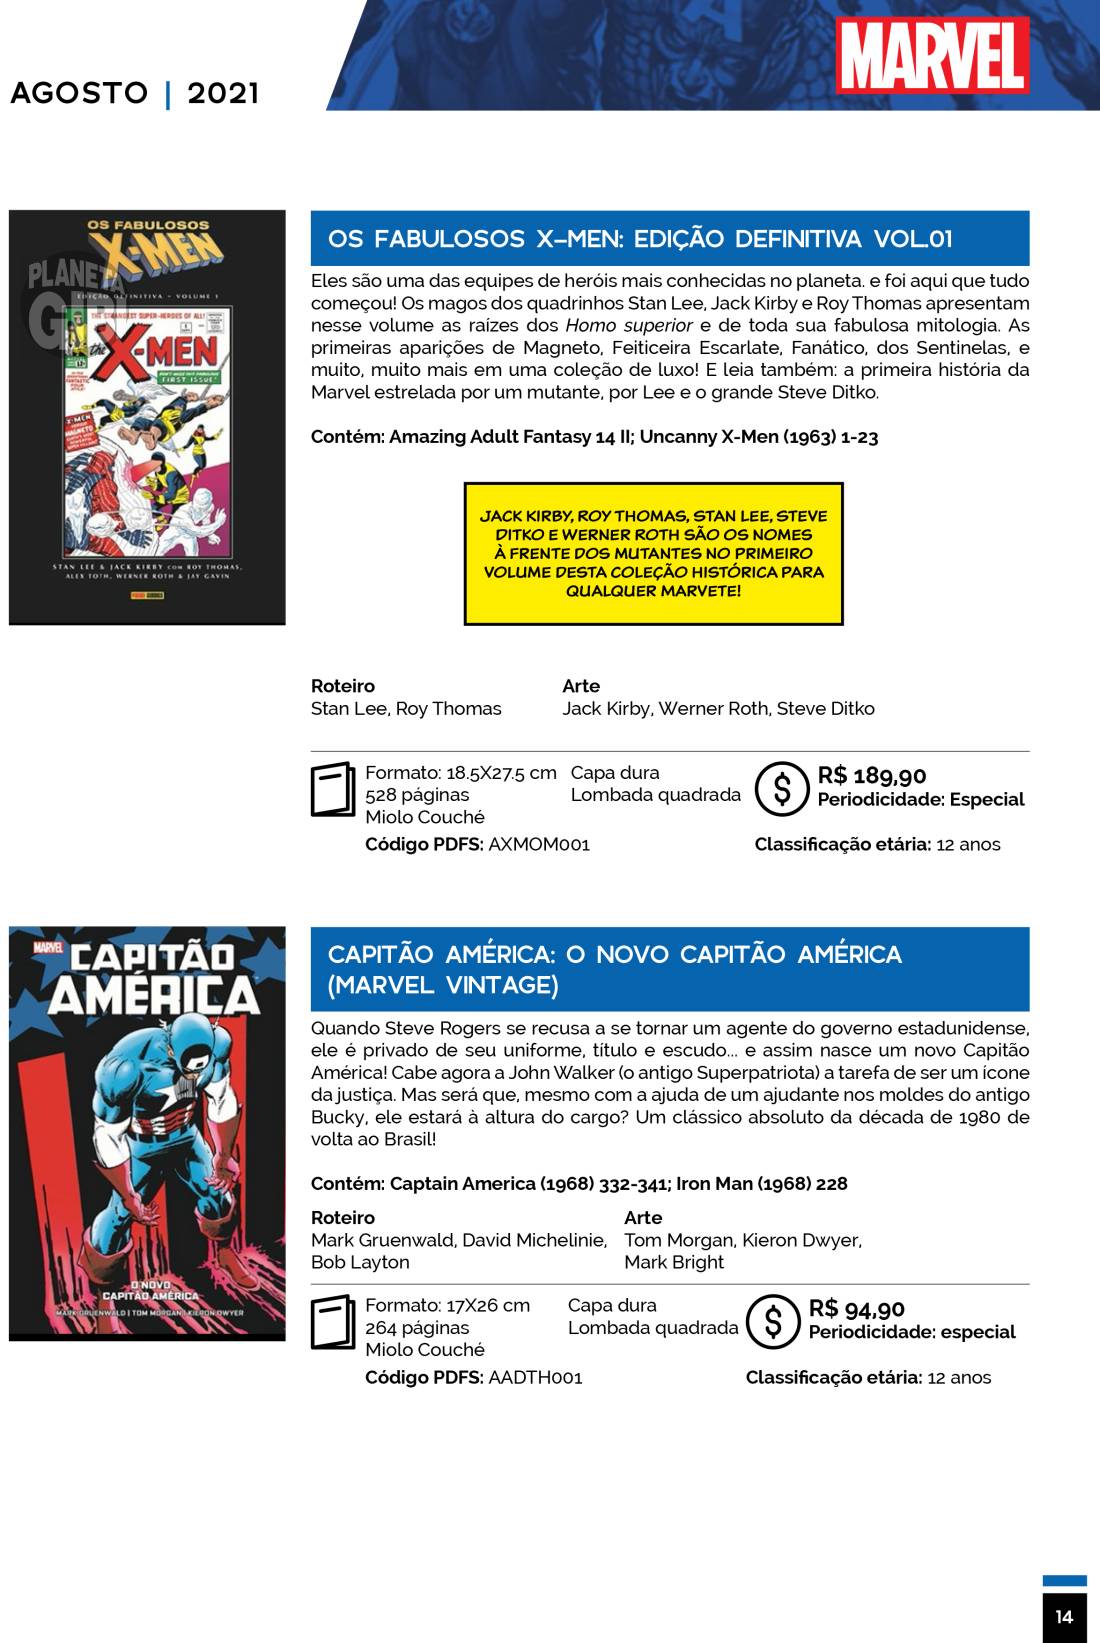 16 - Checklist Marvel/Panini (Julho/2020 - pág.09) - Página 9 Catalogo-Julho-Agosto-14